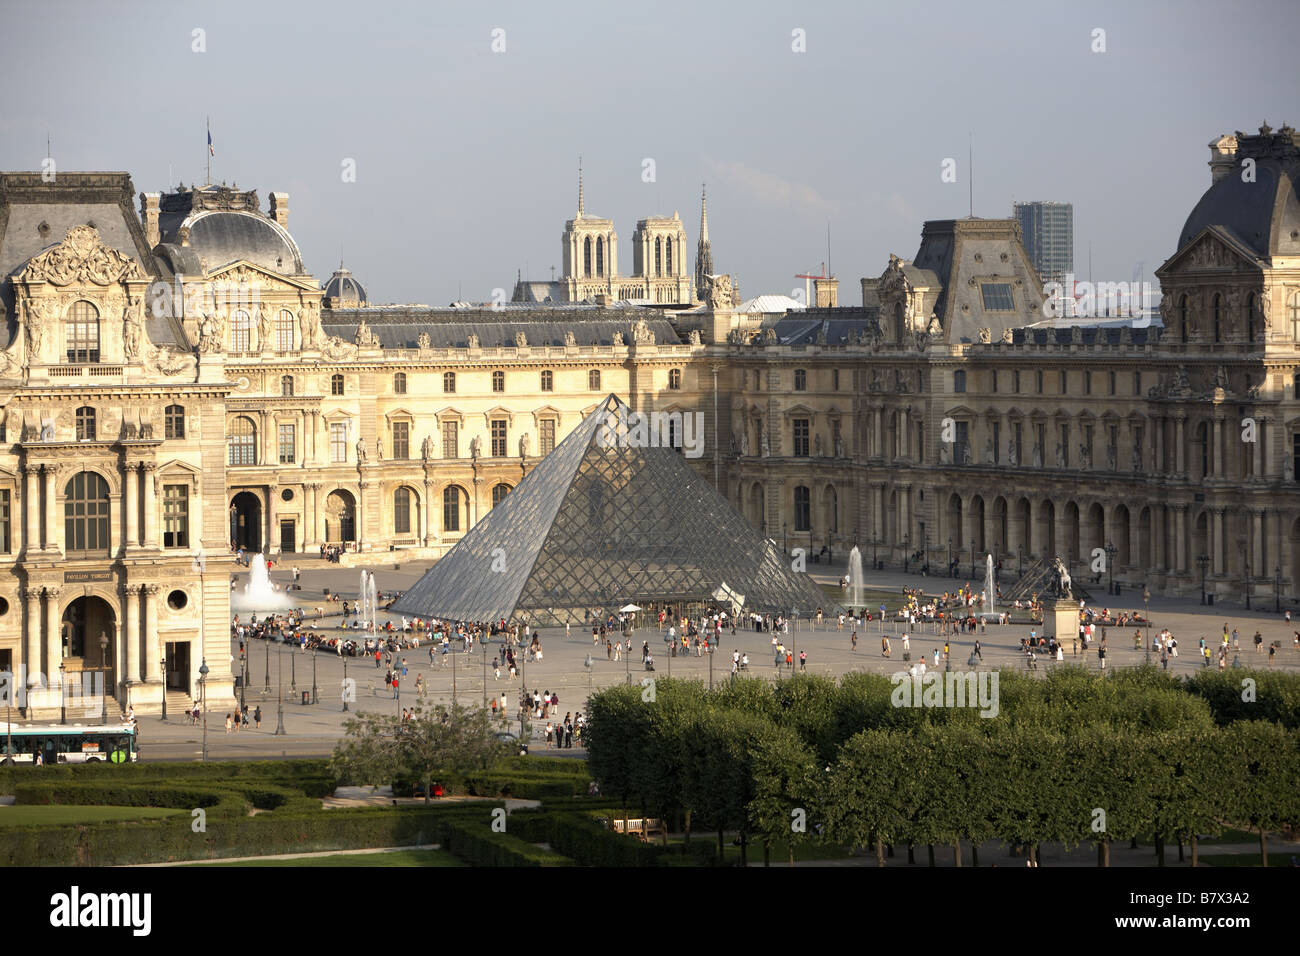 Vue aérienne de le Louvre et sa pyramide conçu par Leoh Ming Pei avec Cathédrale Notre-Dame de Paris à l'arrière-plan, France Banque D'Images